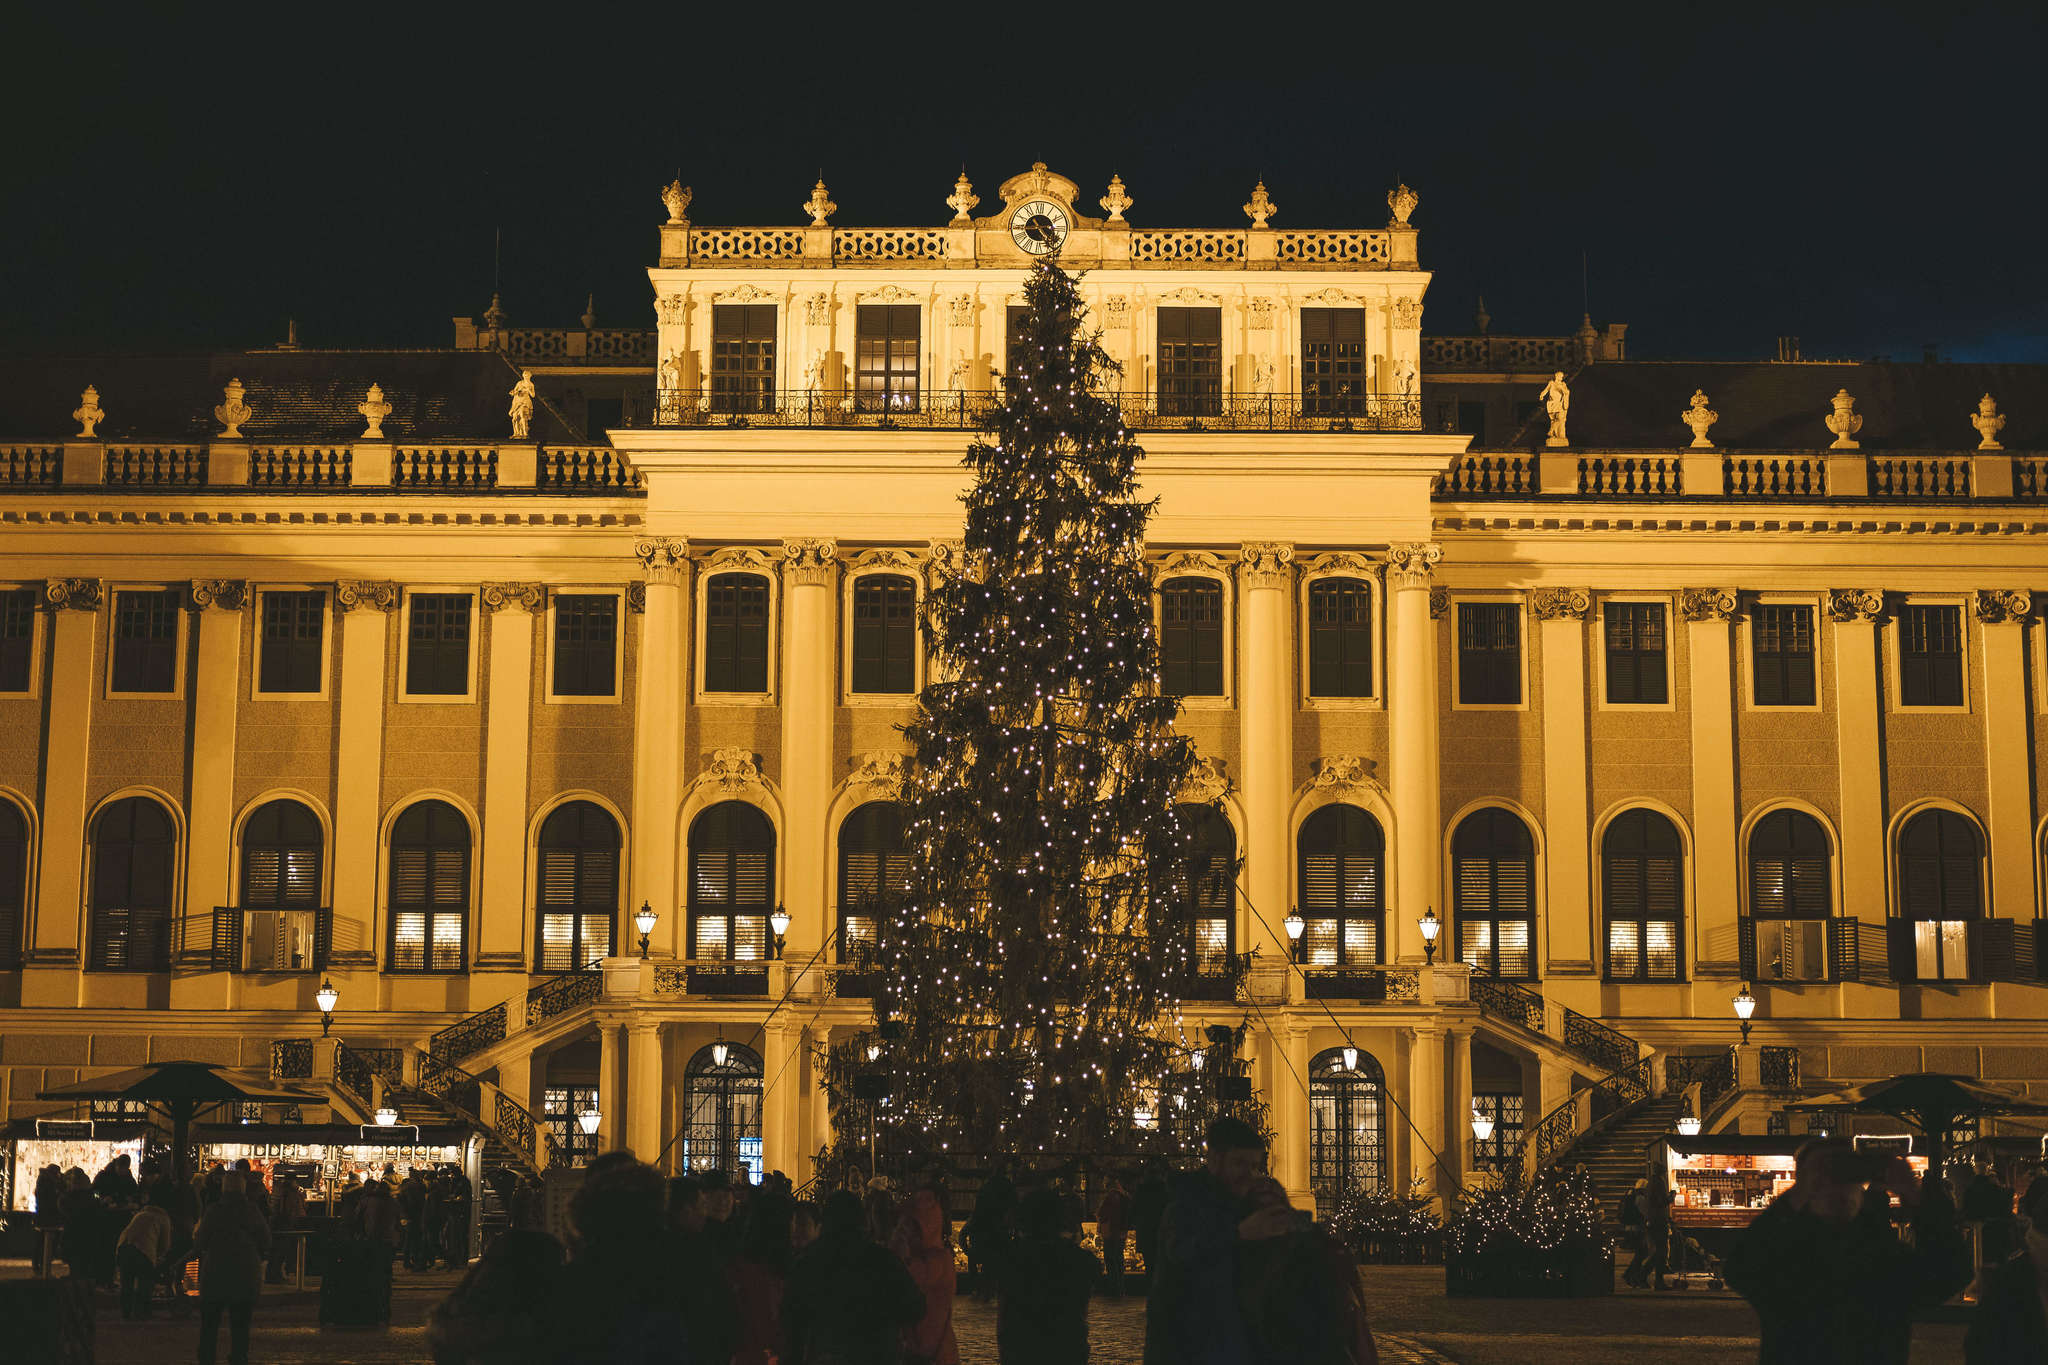 Schonnbrunn palace in Vienna, Austria